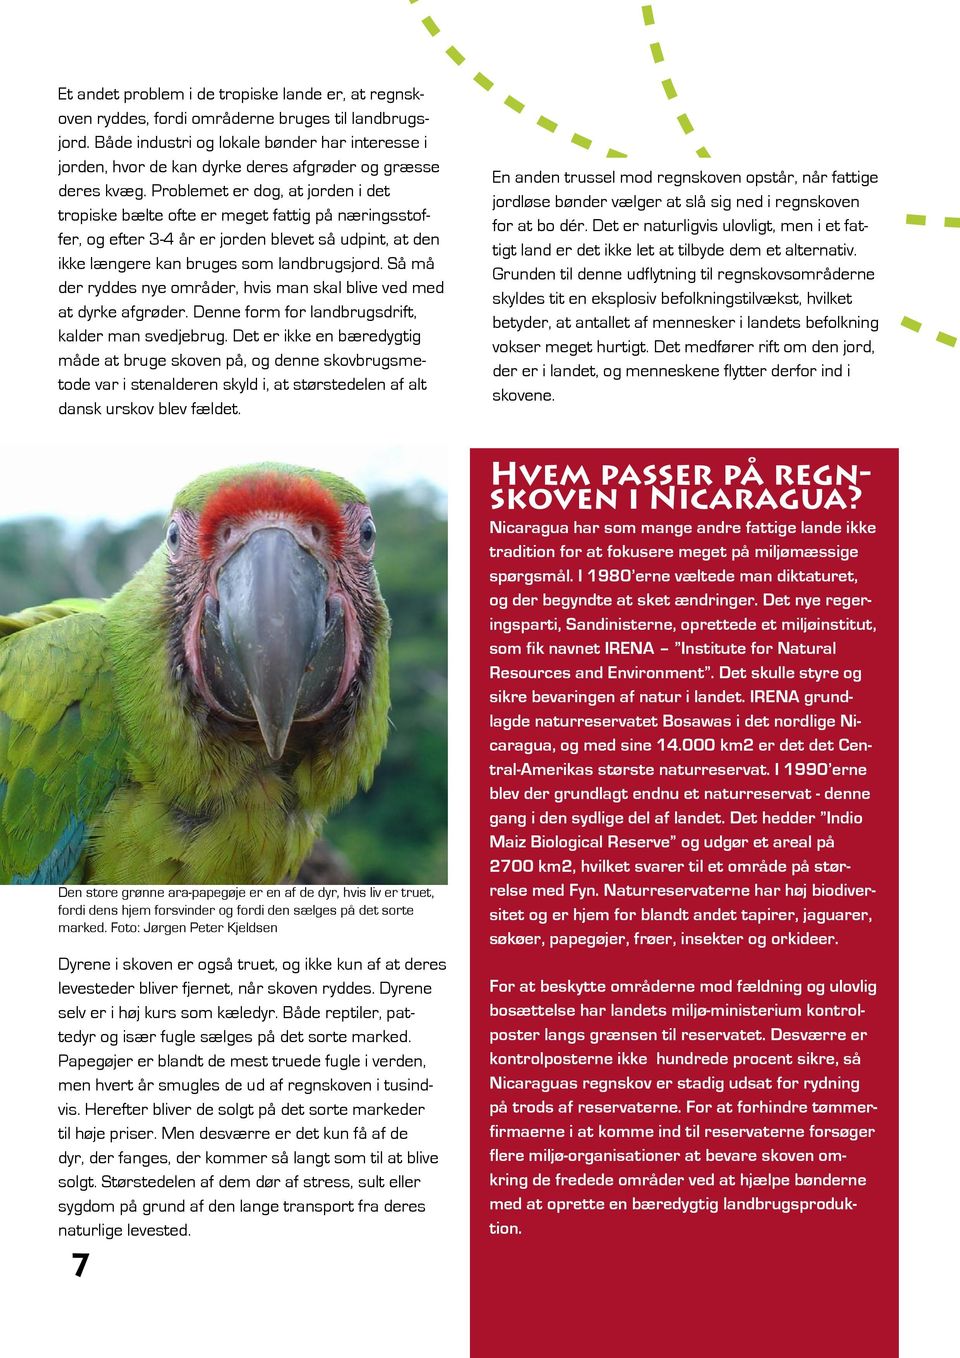 Oberst kirurg bibel PAPEGØJE SAVNES UNDERVISNINGSMATERIALE KLASSE. Lær om Regnskoven Klimaer Ara-papegøjen  Bæredygtighed Fotosyntese Nicaragua - PDF Gratis download